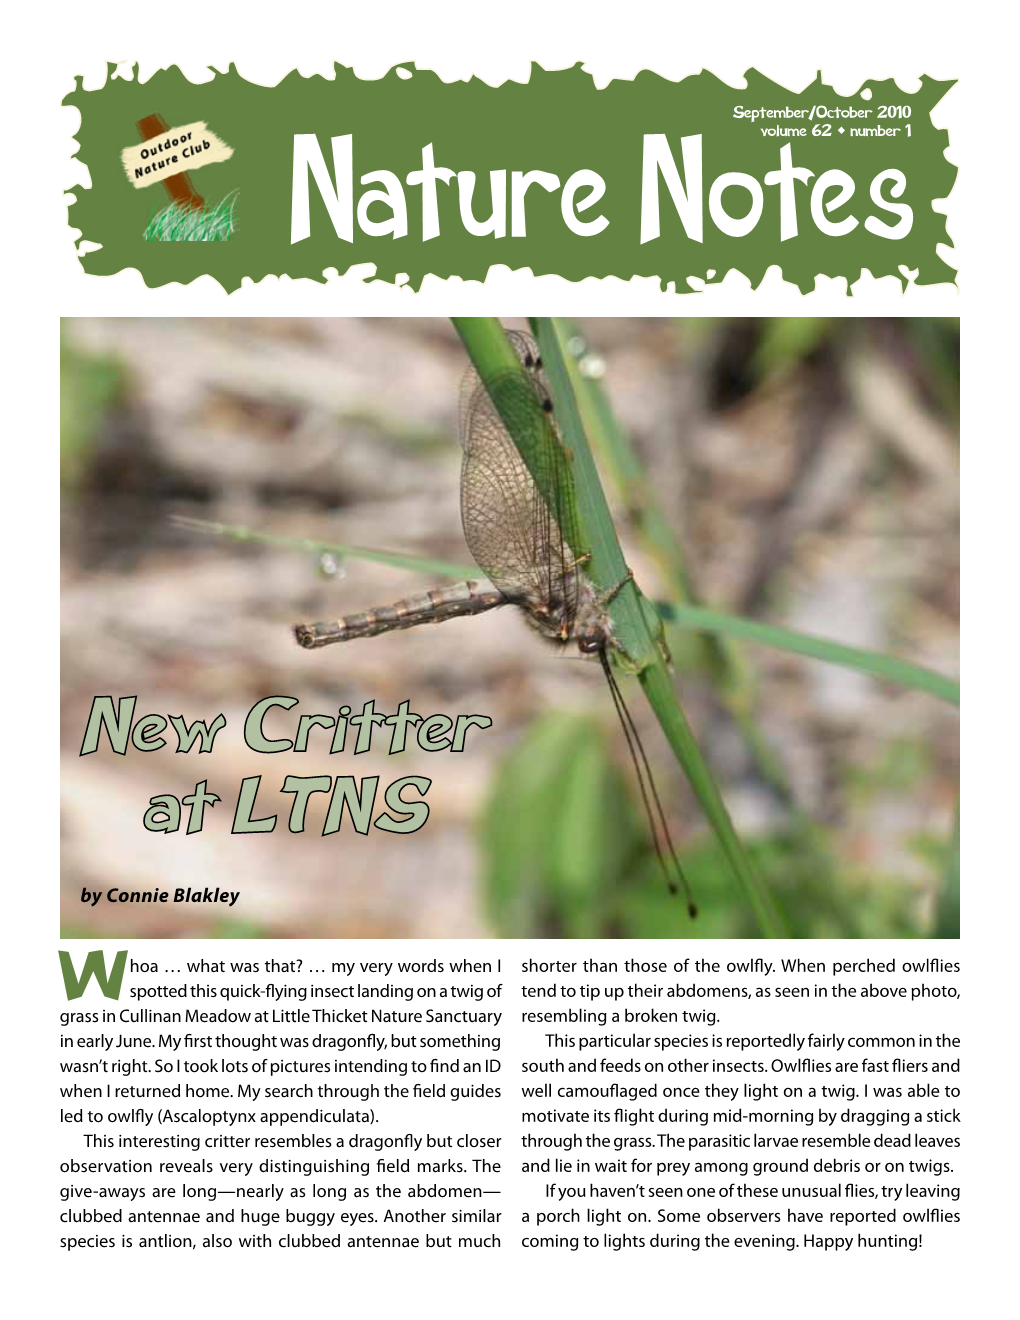 Nature Notes Mar/Apr 2009